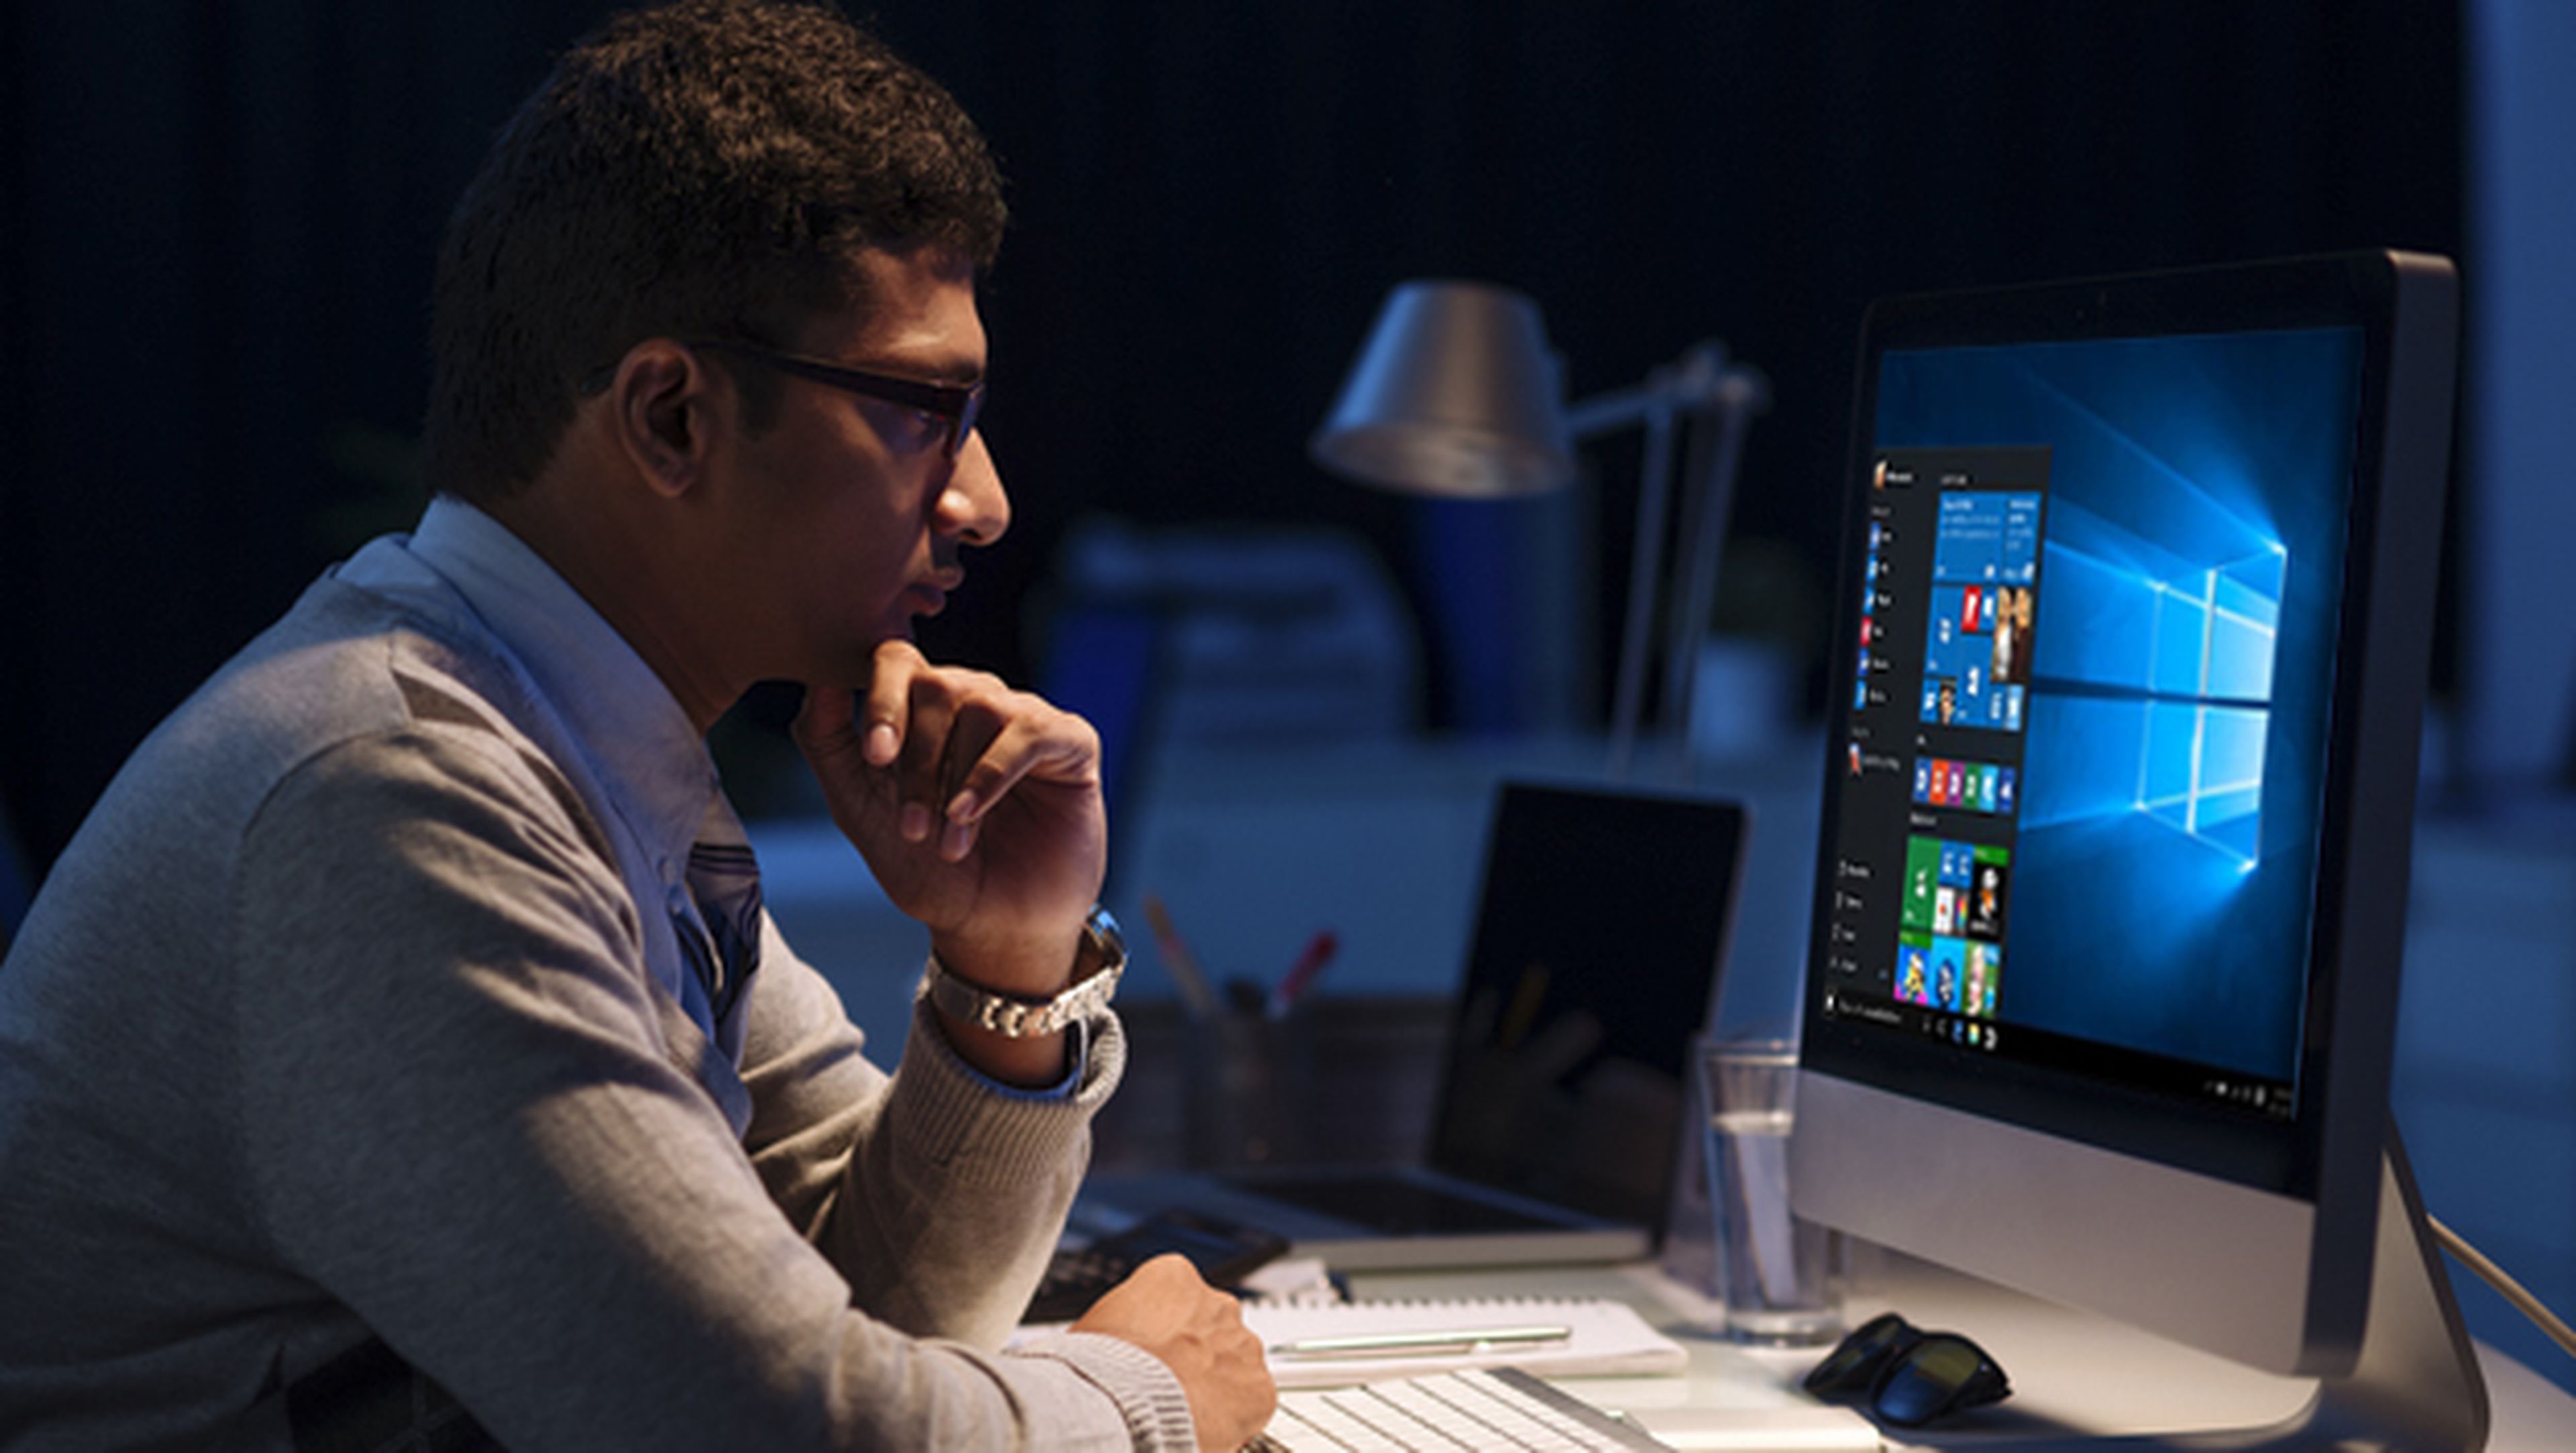 Comunista Electrónico inteligente Windows 10 tendrá un filtro de luz azul para cuidar la vista | Computer Hoy